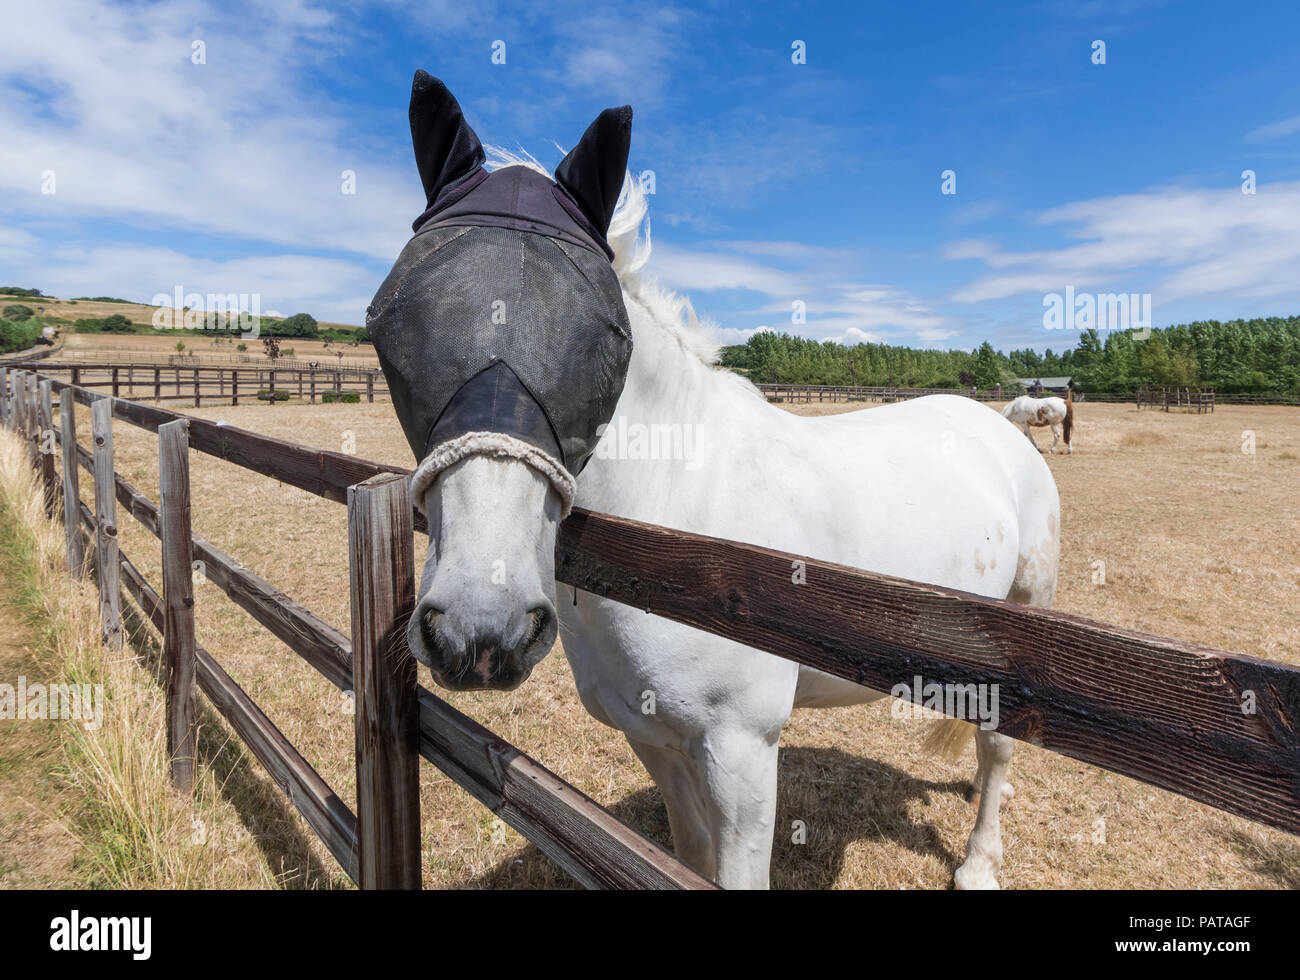 Weißes Pferd im Sommer über einen Zaun, tragen ein Gitter fliegen Schleier schutz Maske auf den Kopf und Ohren von Fliegen, in West Sussex, UK zu schützen. Stockfoto